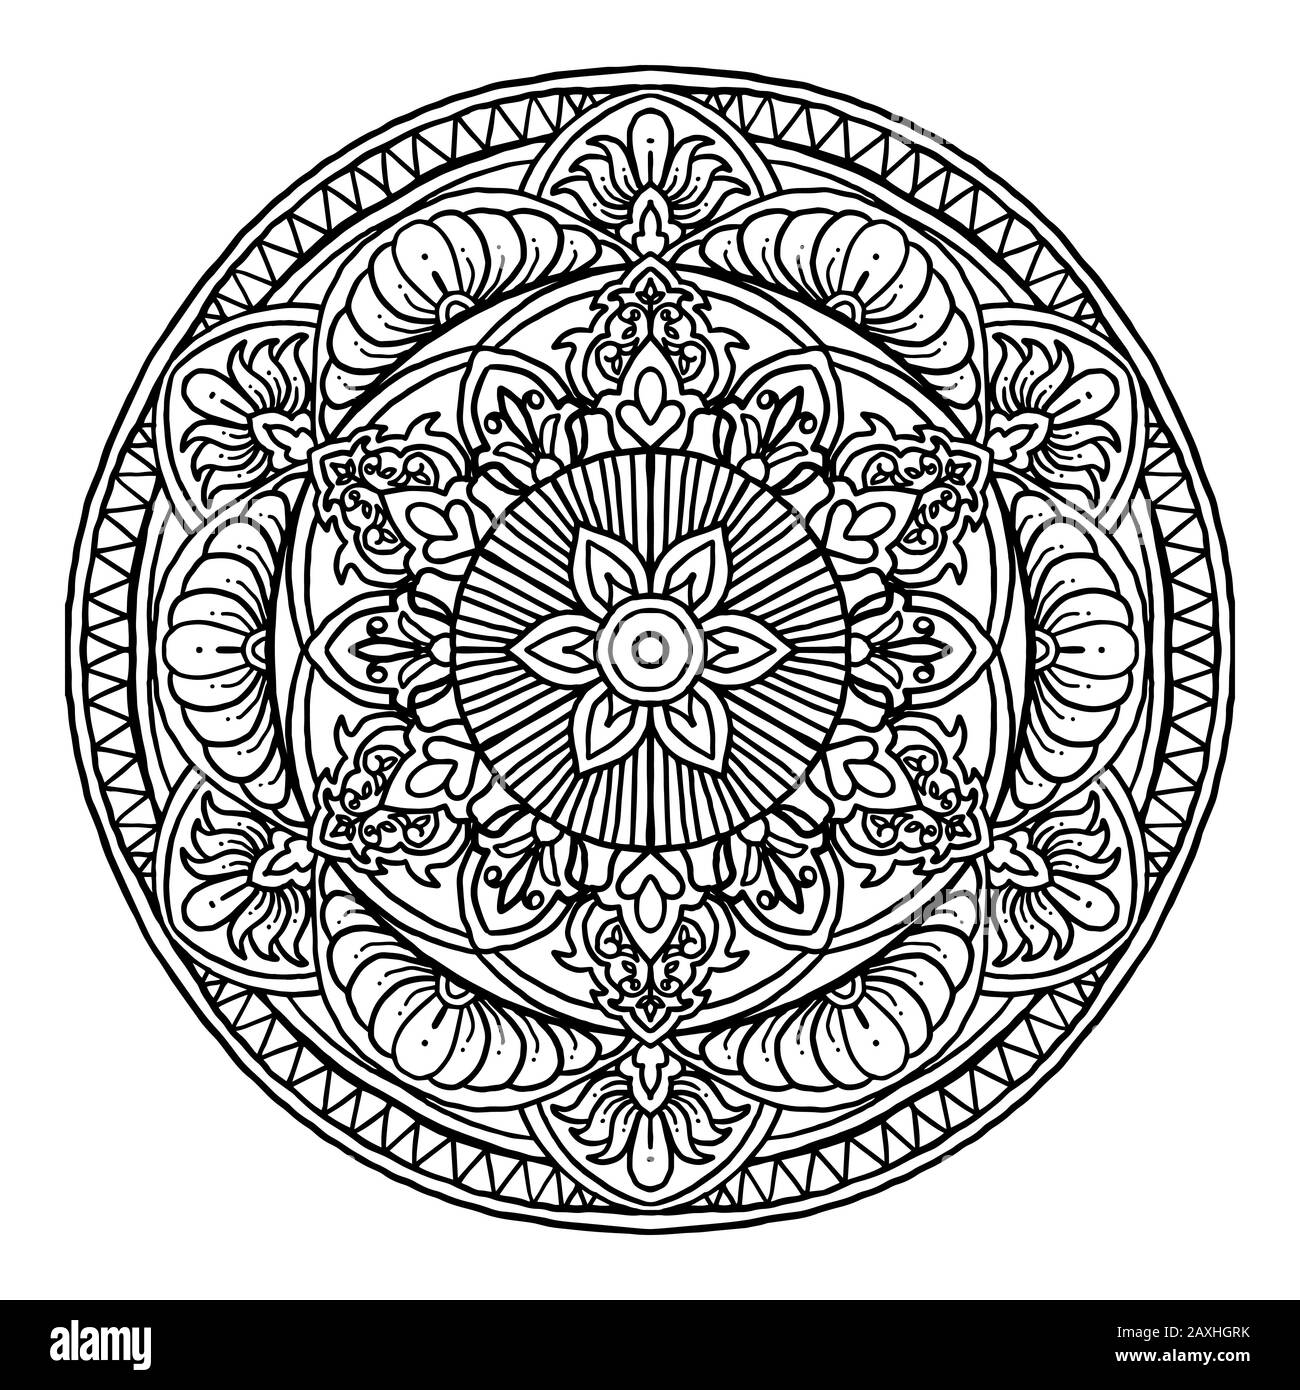 Umrisse Mandala dekoratives Rundornament, kann zum Färben von Büchern, Anti-Stress-Therapie, Grußkarte, Telefon-Case-Druck usw. Verwendet Werden. Handgezeichneter Stil Stock Vektor